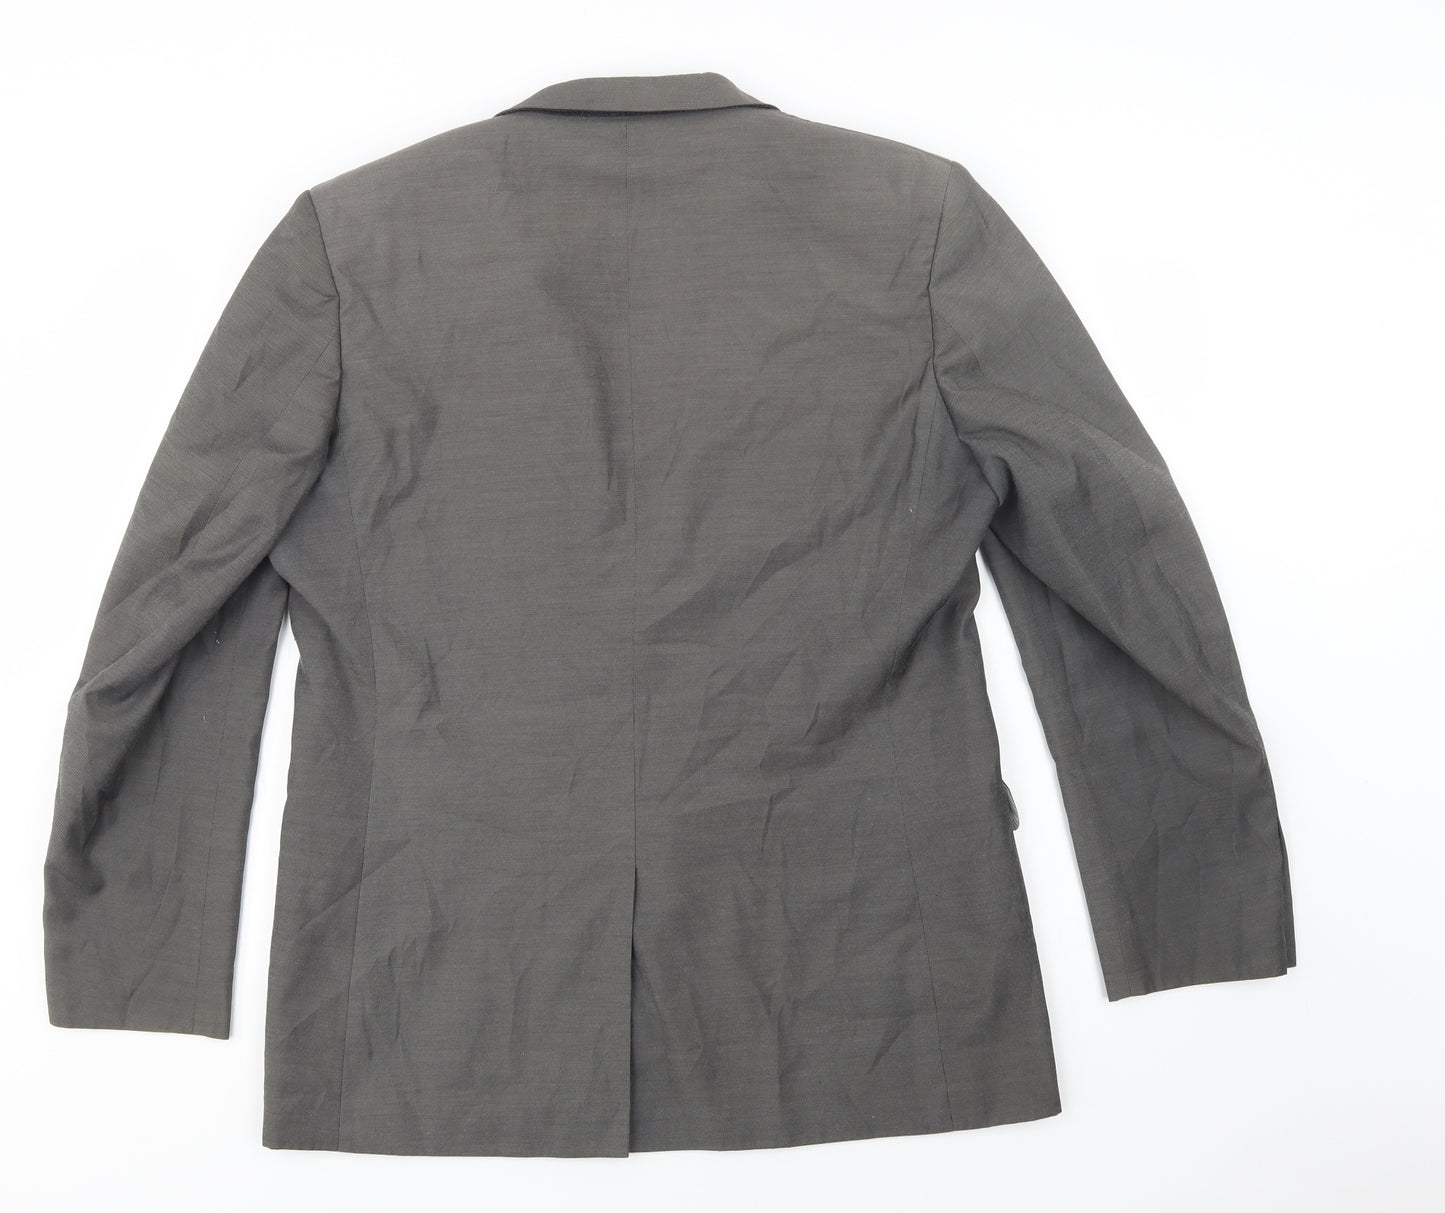 F&F Mens Grey   Jacket Blazer Size 42  Button